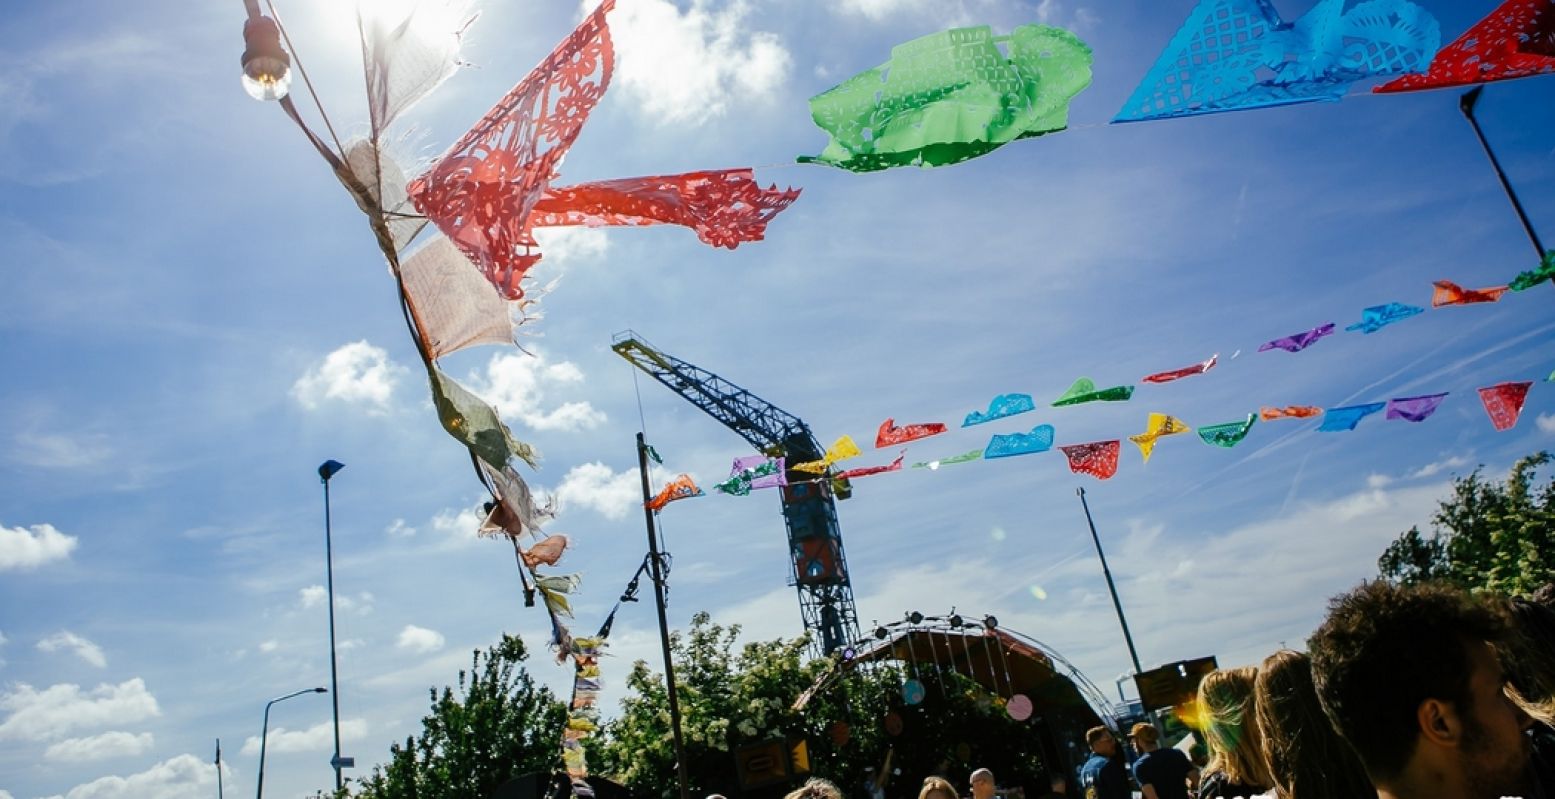 De vrolijke vlaggetjes zeggen het al: hier is het fun! Foto: Festival Hemeltjelief!